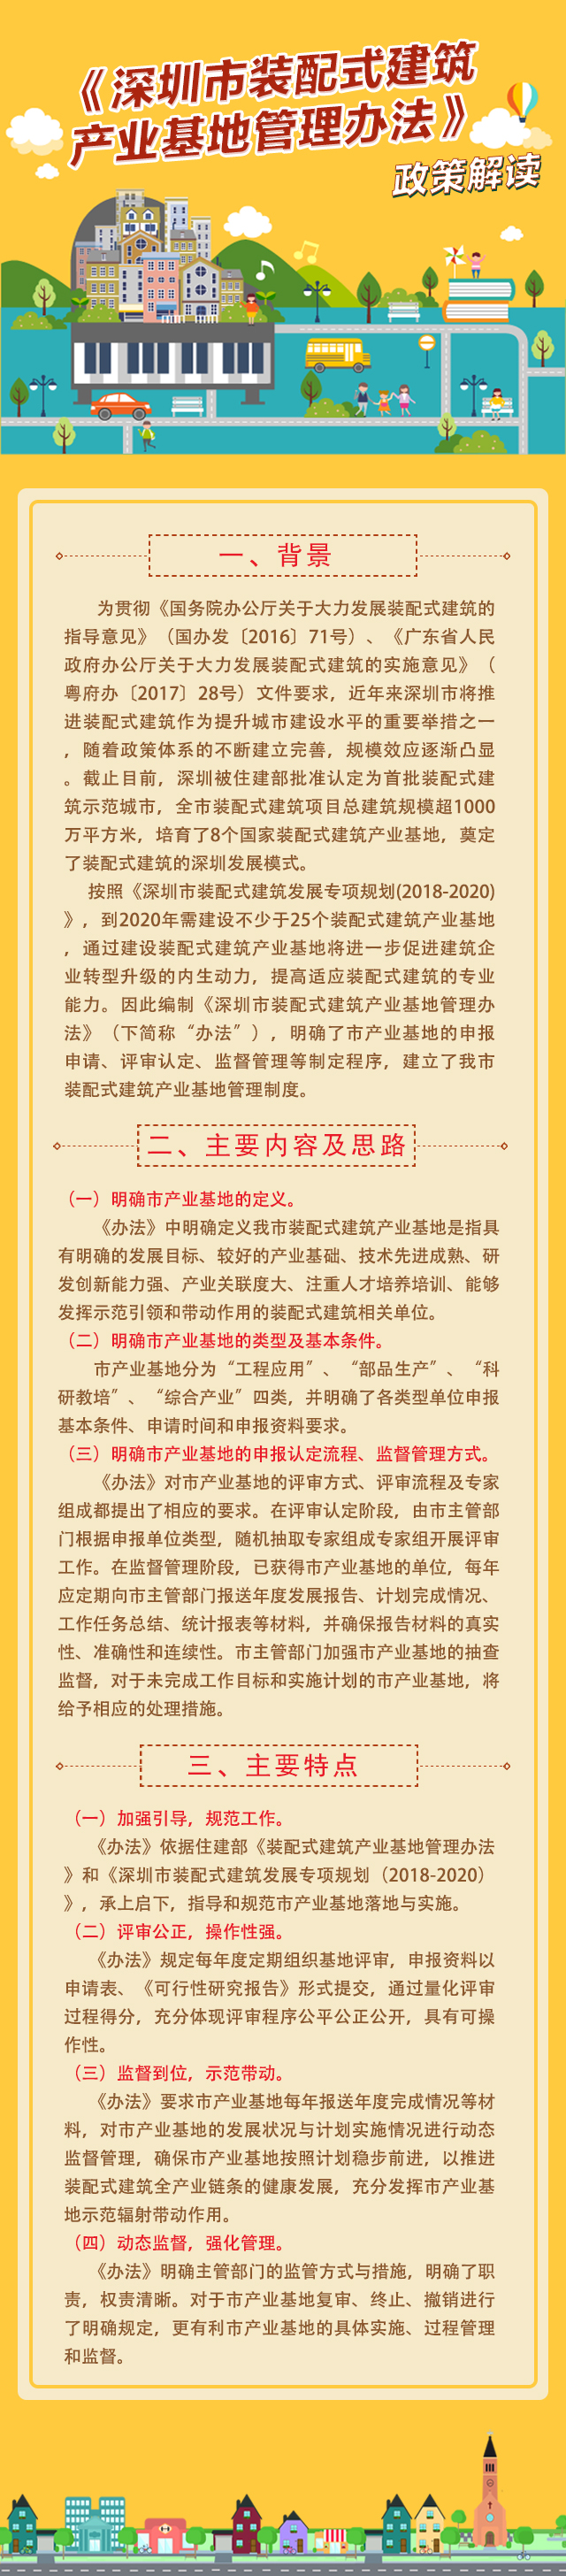 《深圳市装配式建筑产业基地管理办法》政策解读.jpg